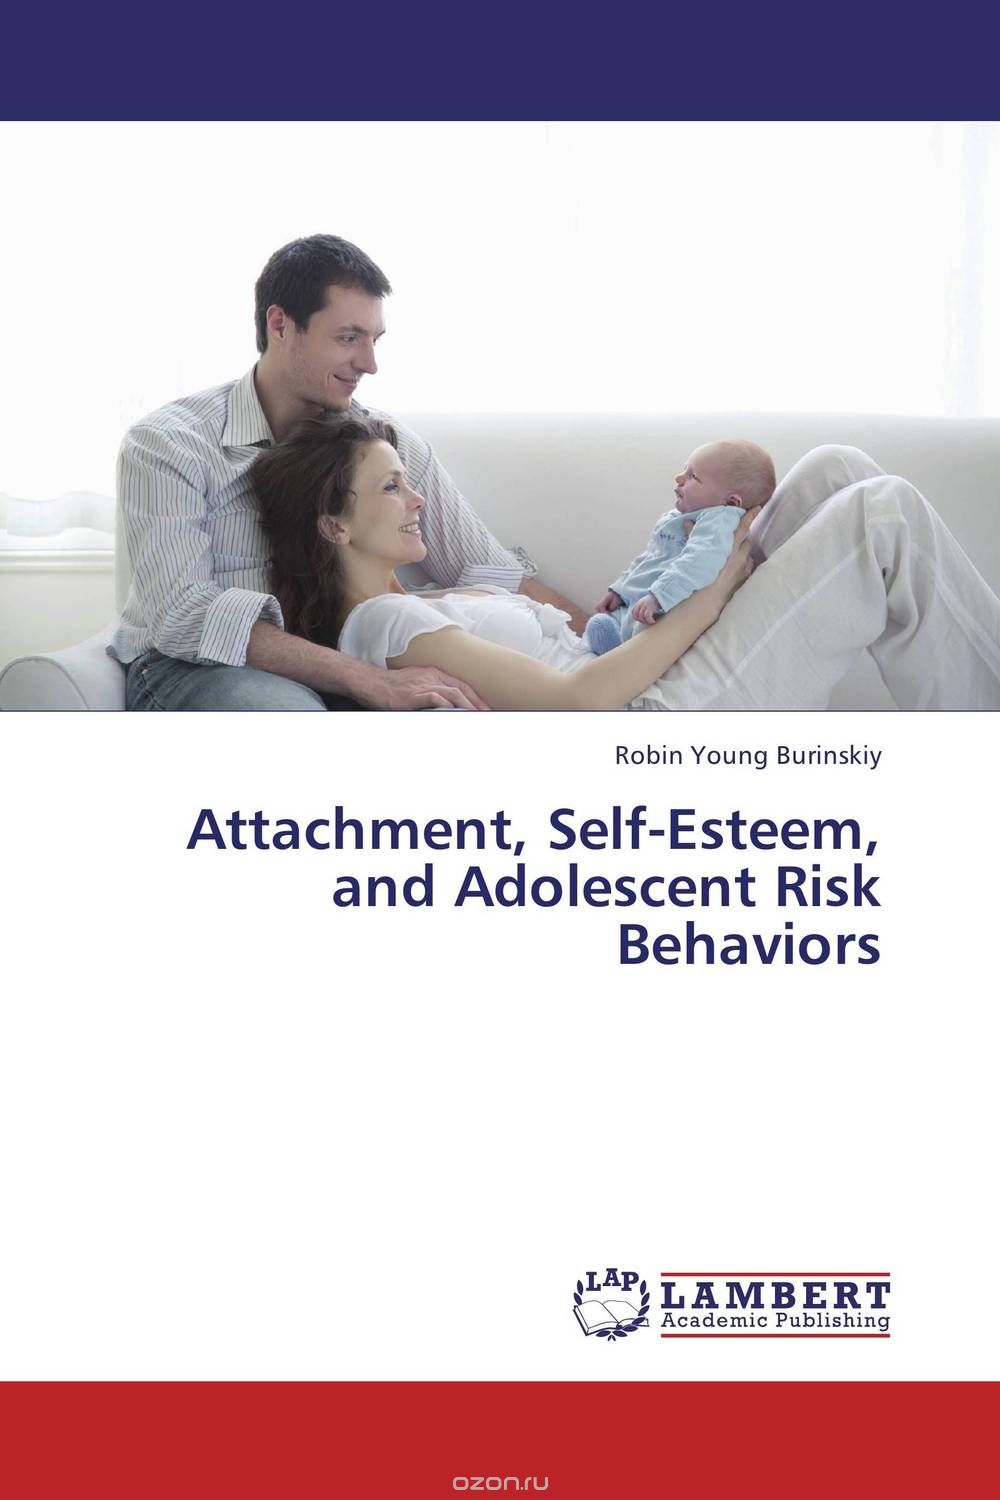 Скачать книгу "Attachment, Self-Esteem, and Adolescent Risk Behaviors"